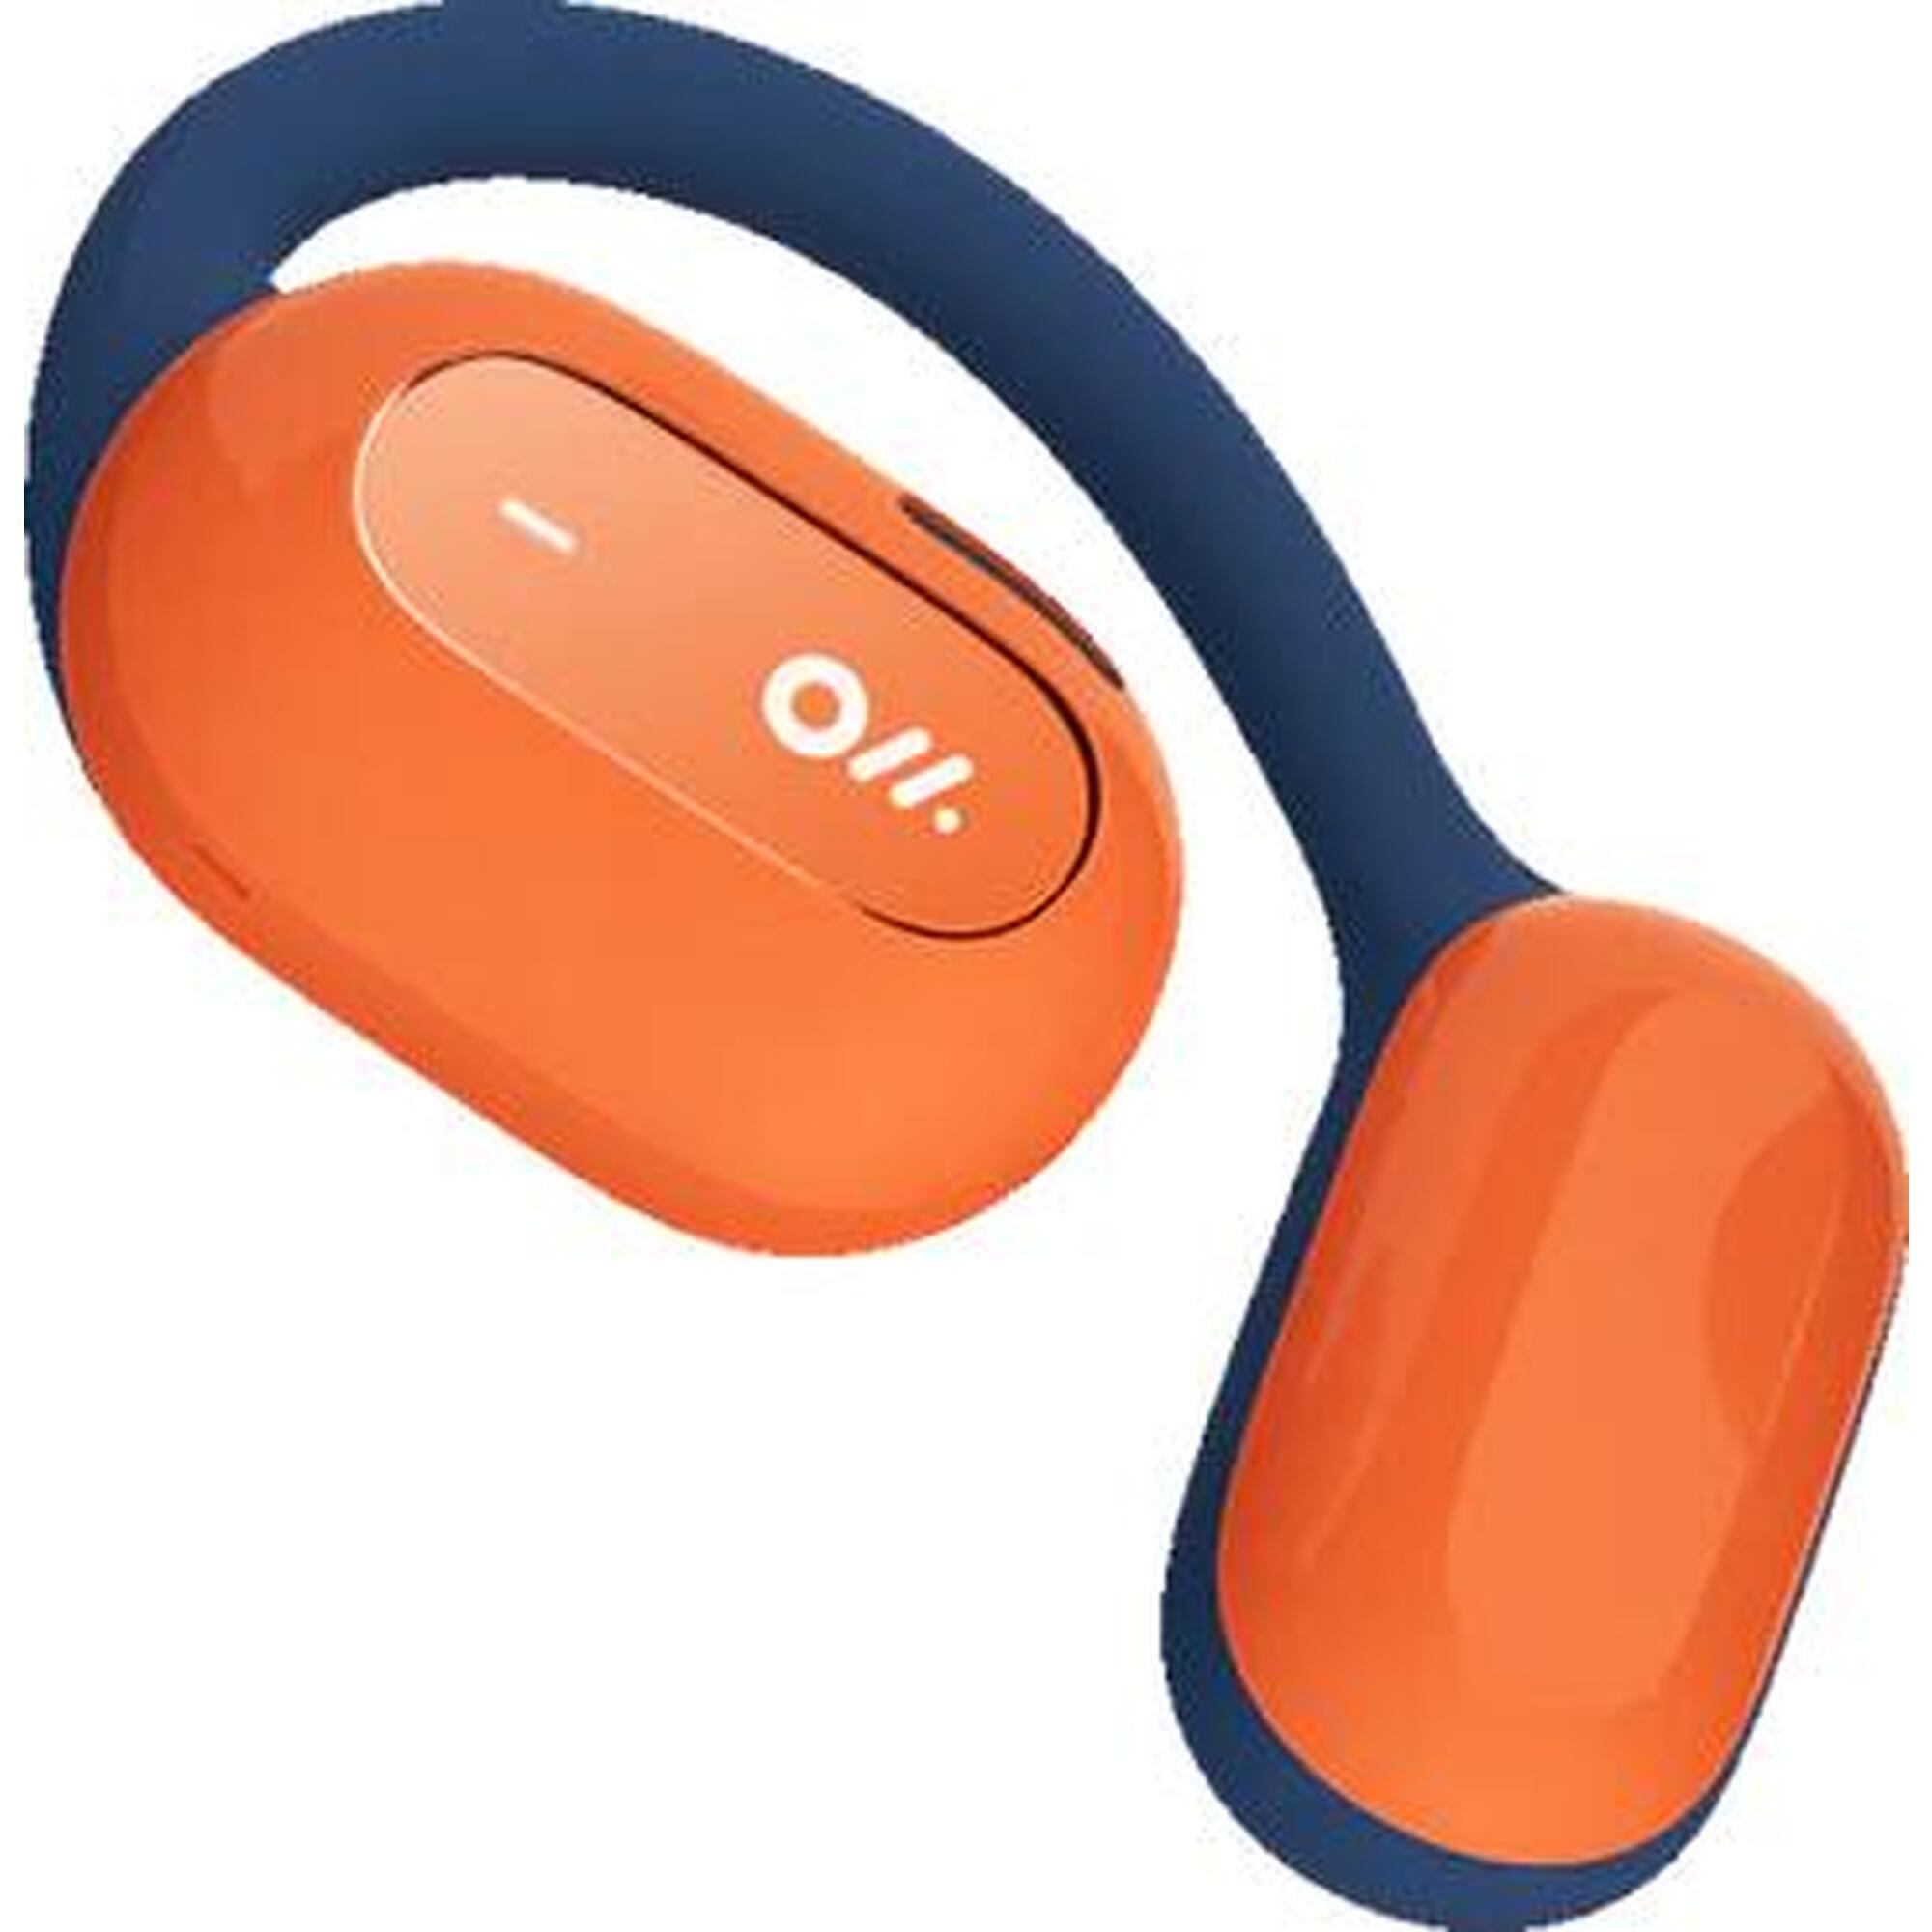 OWS2 Wearable Stereo Bluetooth Earphone - Interstellar Blue